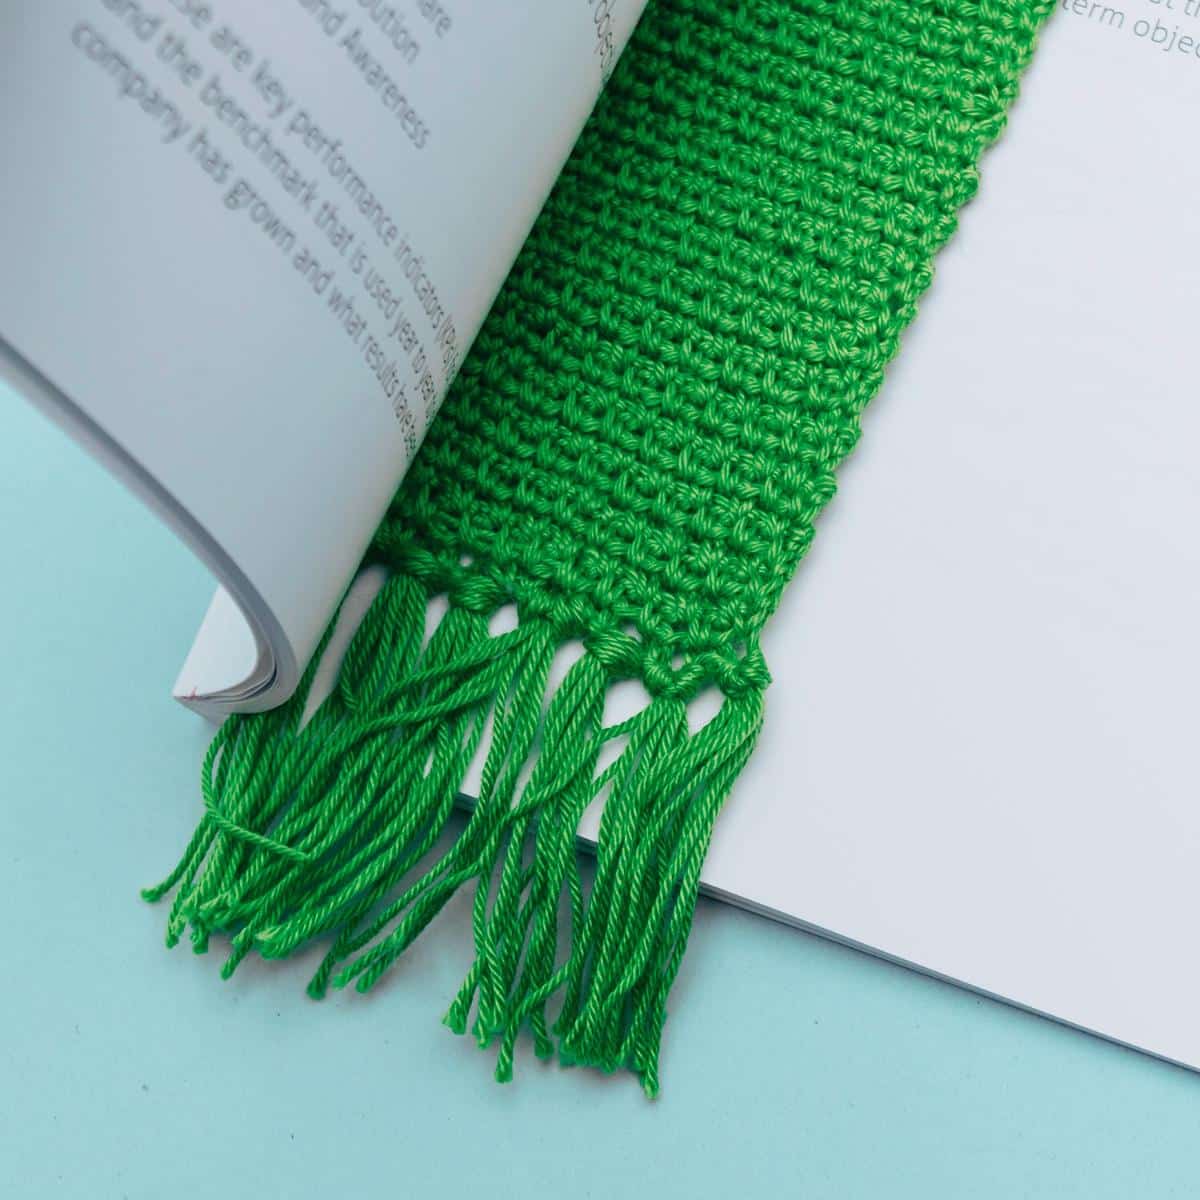 Woven Stitch Bookmark Crochet